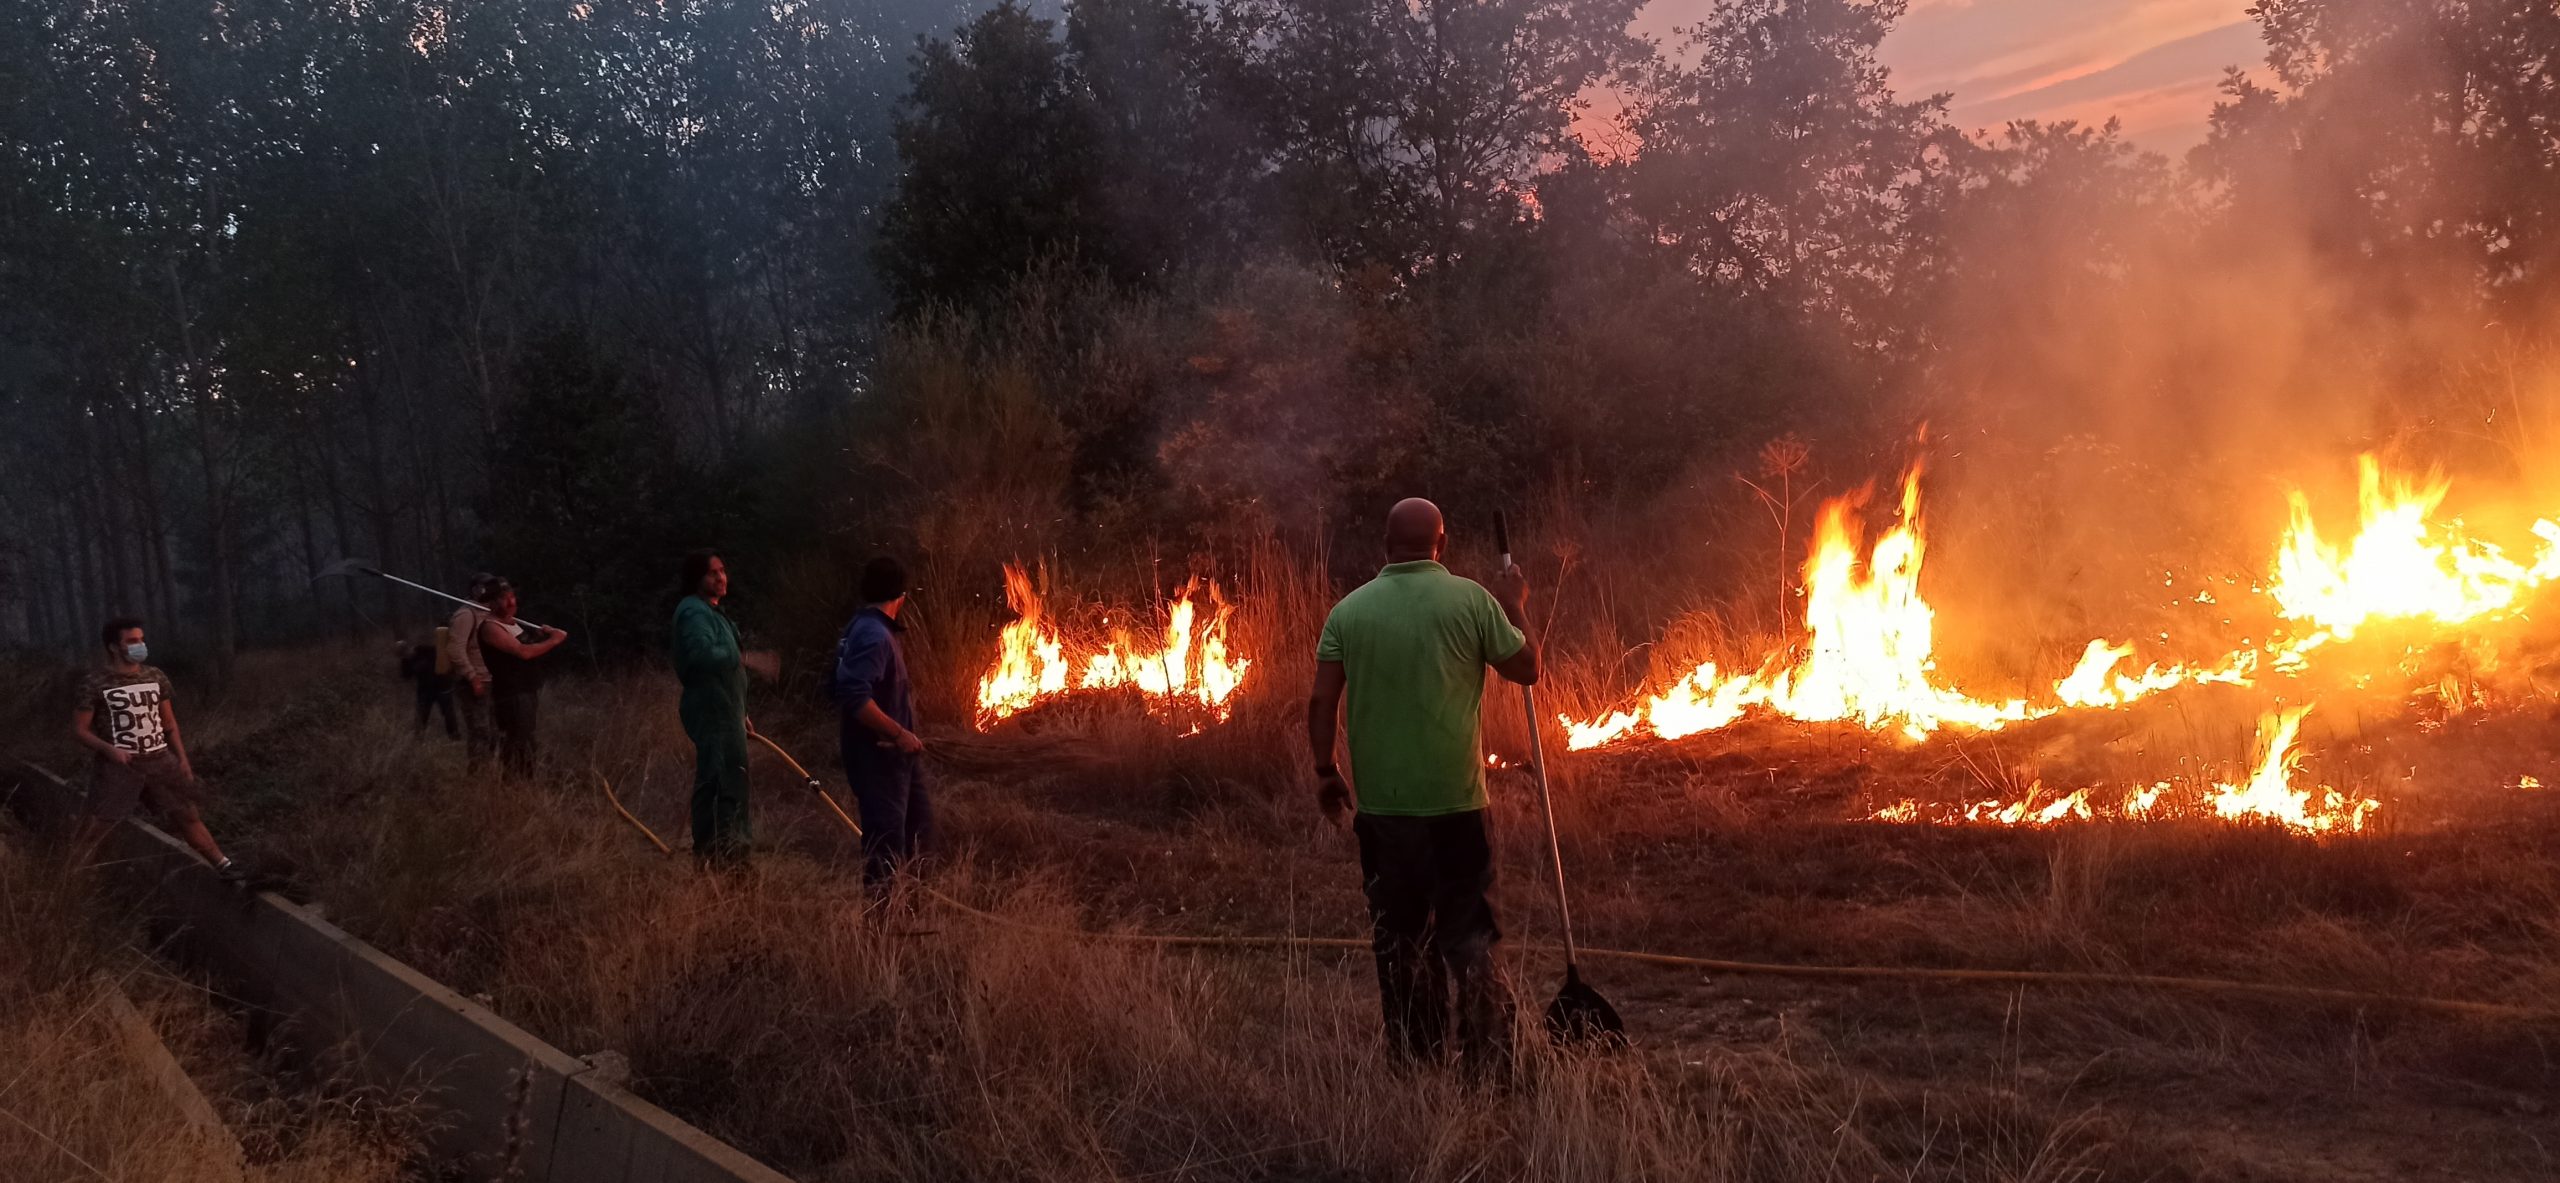 El alcalde de Castrcontrigo Olivio Campo participando en la extinción del incendio